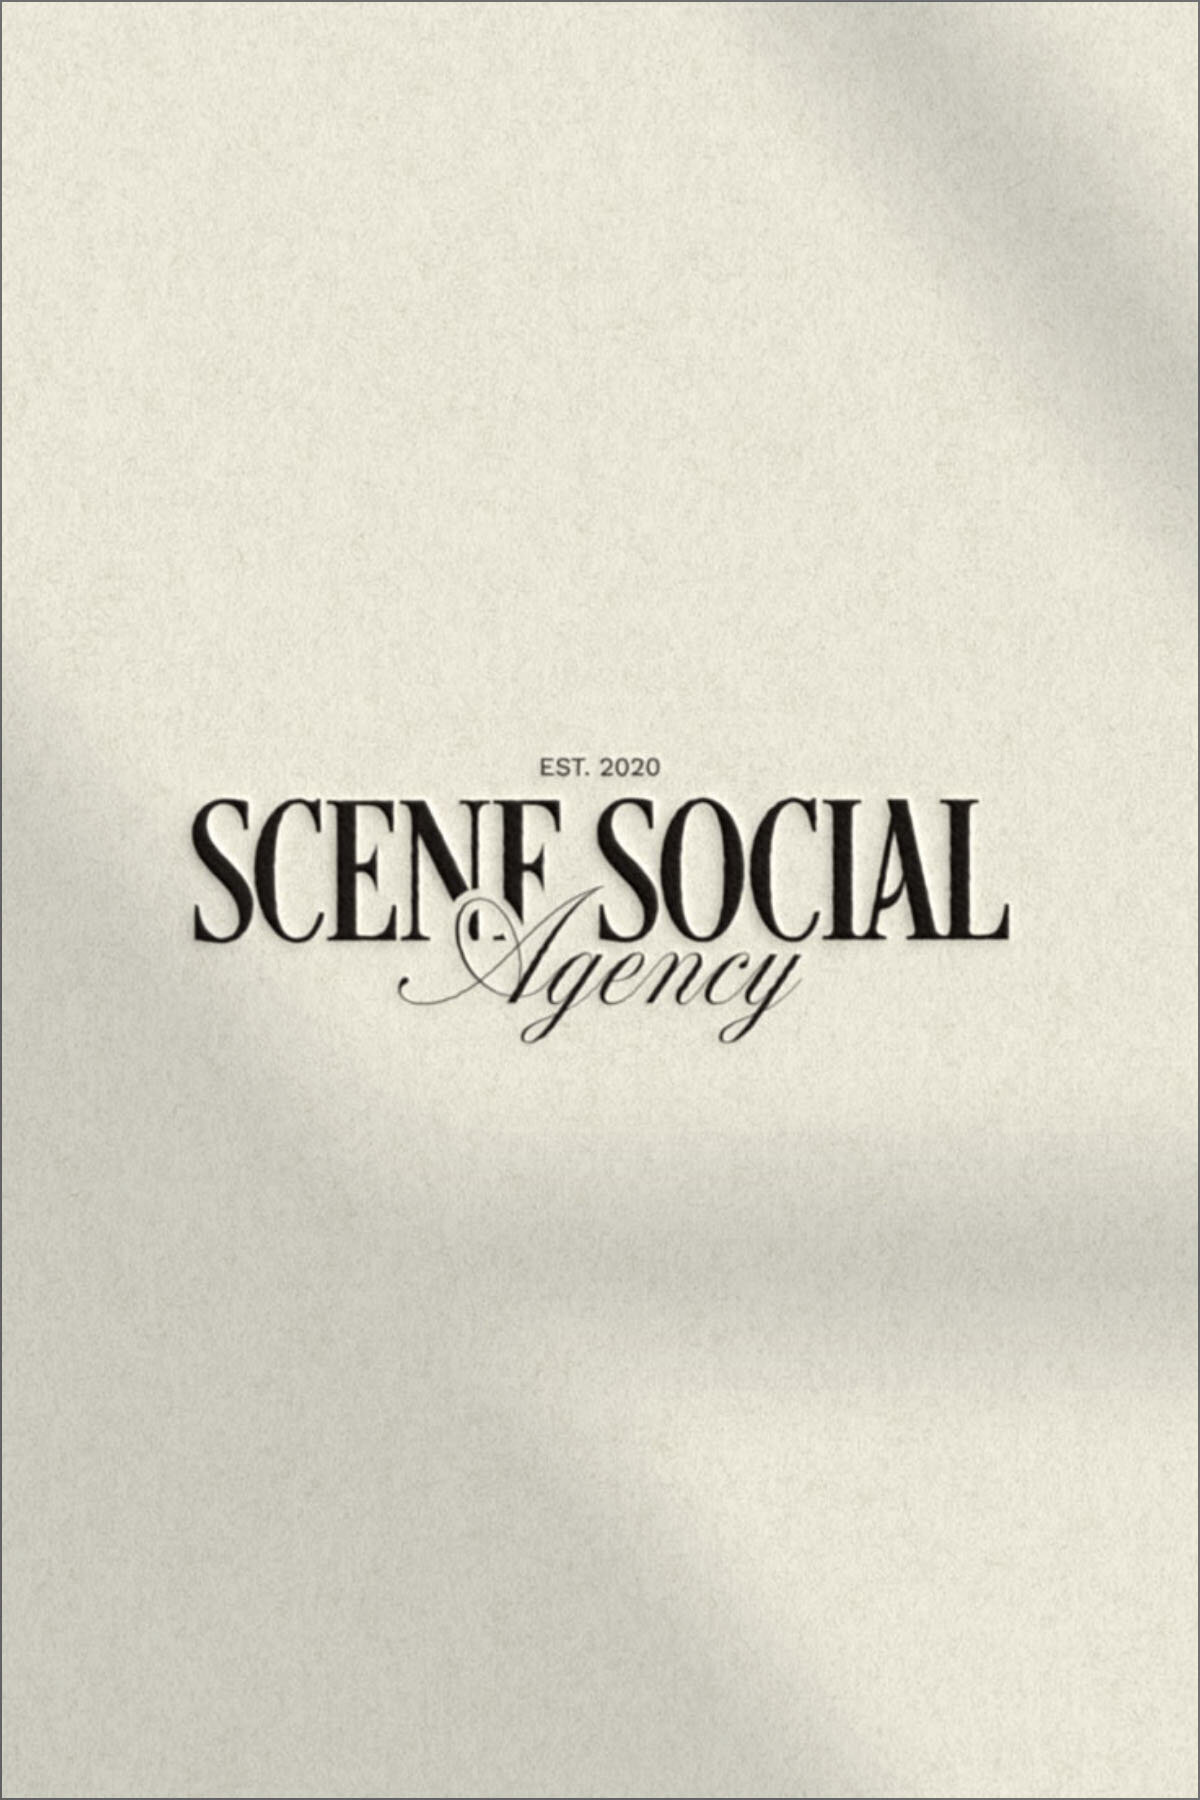 Scene Social Semi Custom Brand Kit by Cecile Creative Studio9